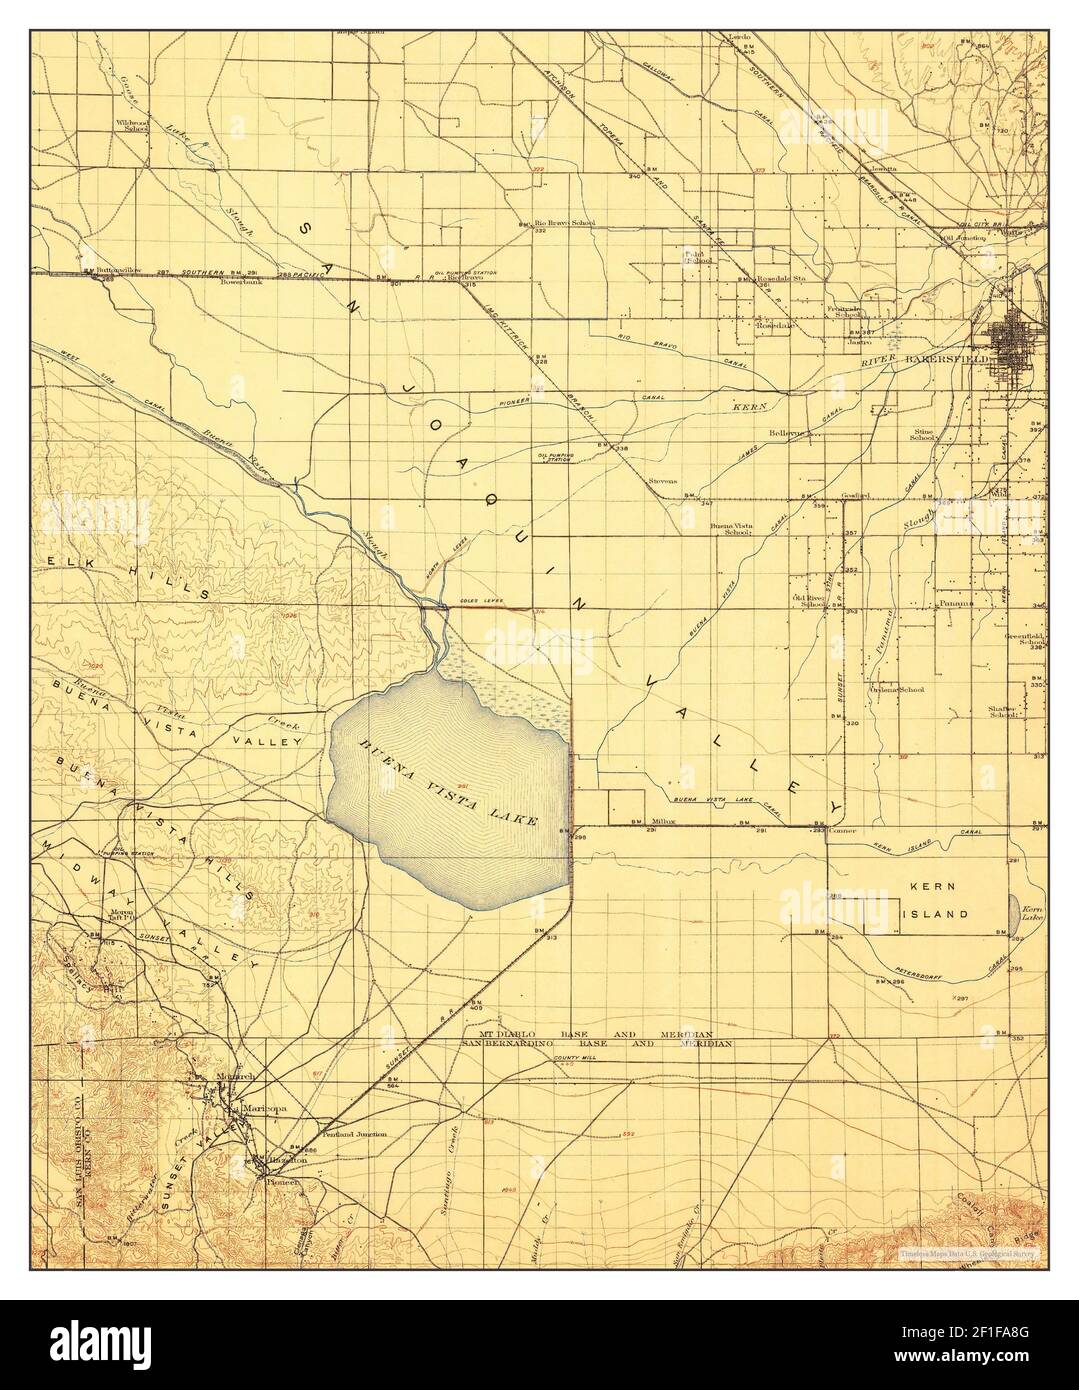 Buena Vista Lake, California, mappa 1910, 1:125000, Stati Uniti d'America da Timeless Maps, dati U.S. Geological Survey Foto Stock